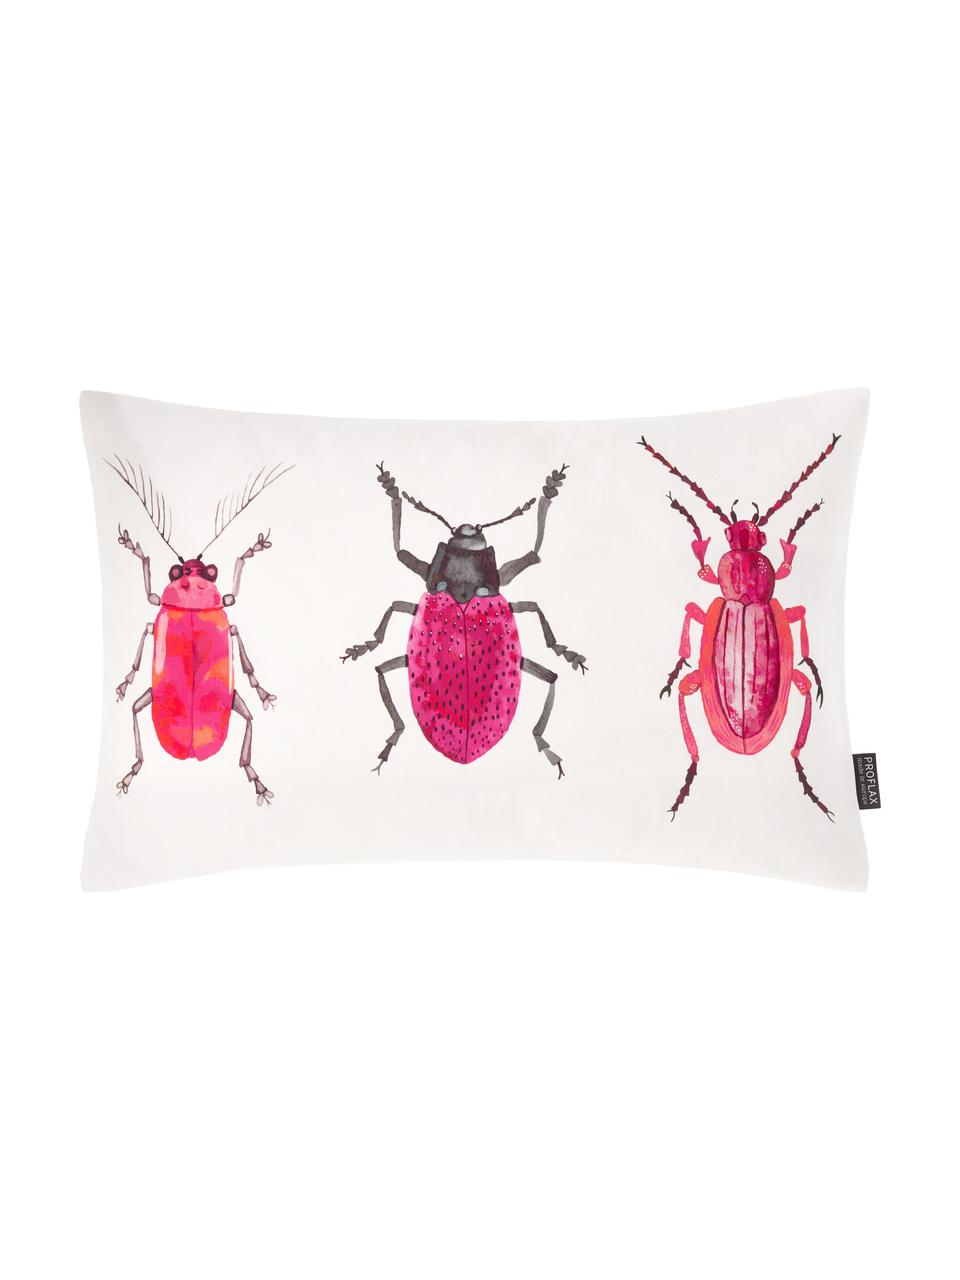 Kissenhülle Amigos mit Käfermotiven, 100% Baumwolle, Weiss, Pink, Schwarz, 30 x 50 cm